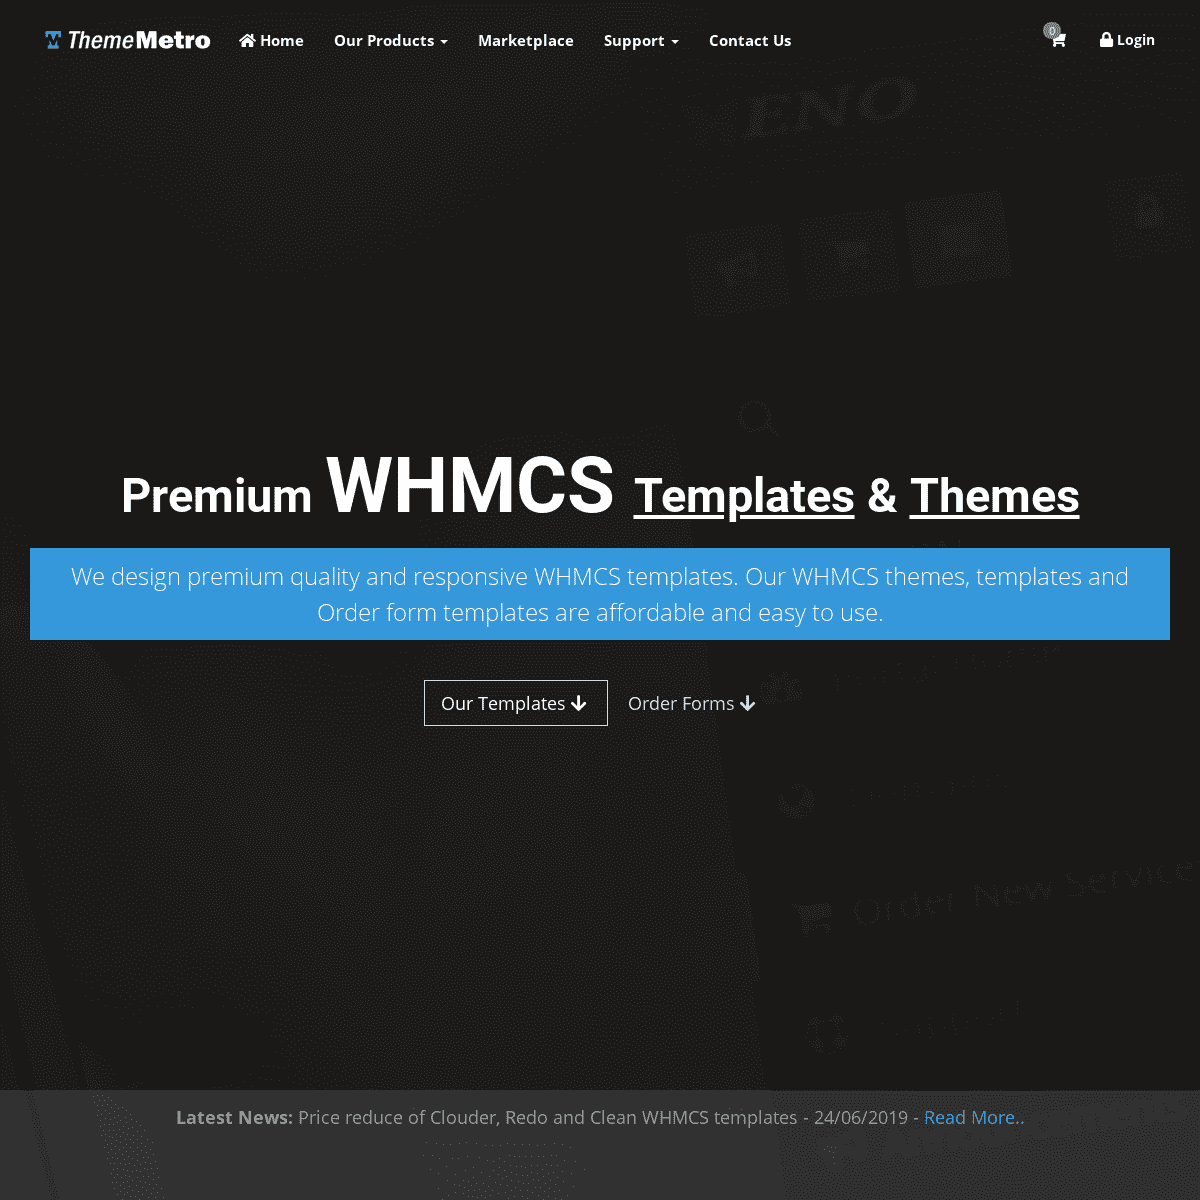 Premium WHMCS Templates & Themes - ThemeMetro